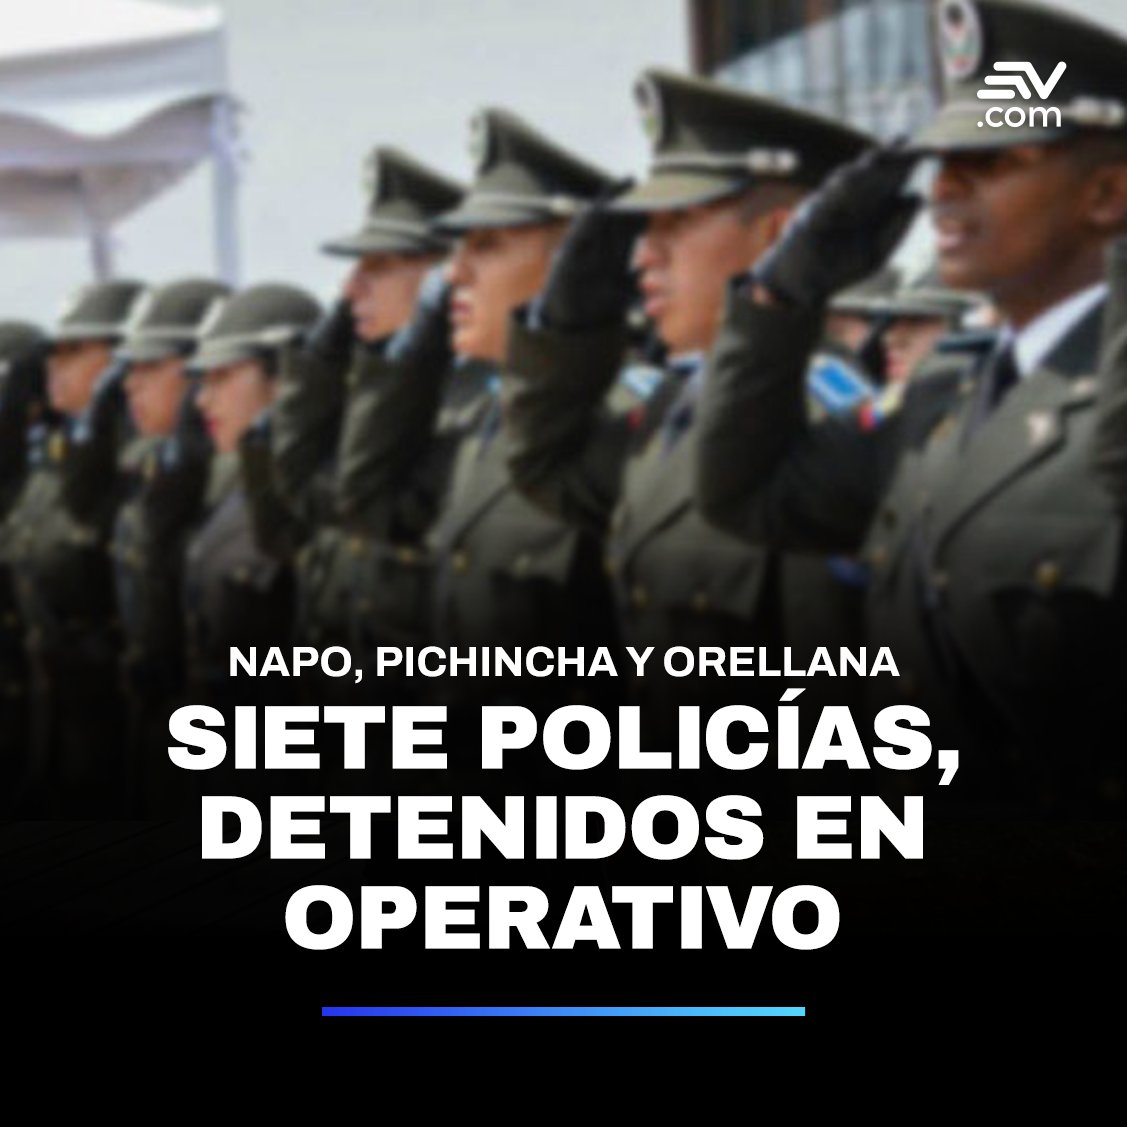 Siete policías y dos civiles fueron detenidos este martes 14 de mayo durante operativos desarrollados en las provincias de Napo, Pichincha y Orellana. Más detalles ▶️ bit.ly/4bgnTvv